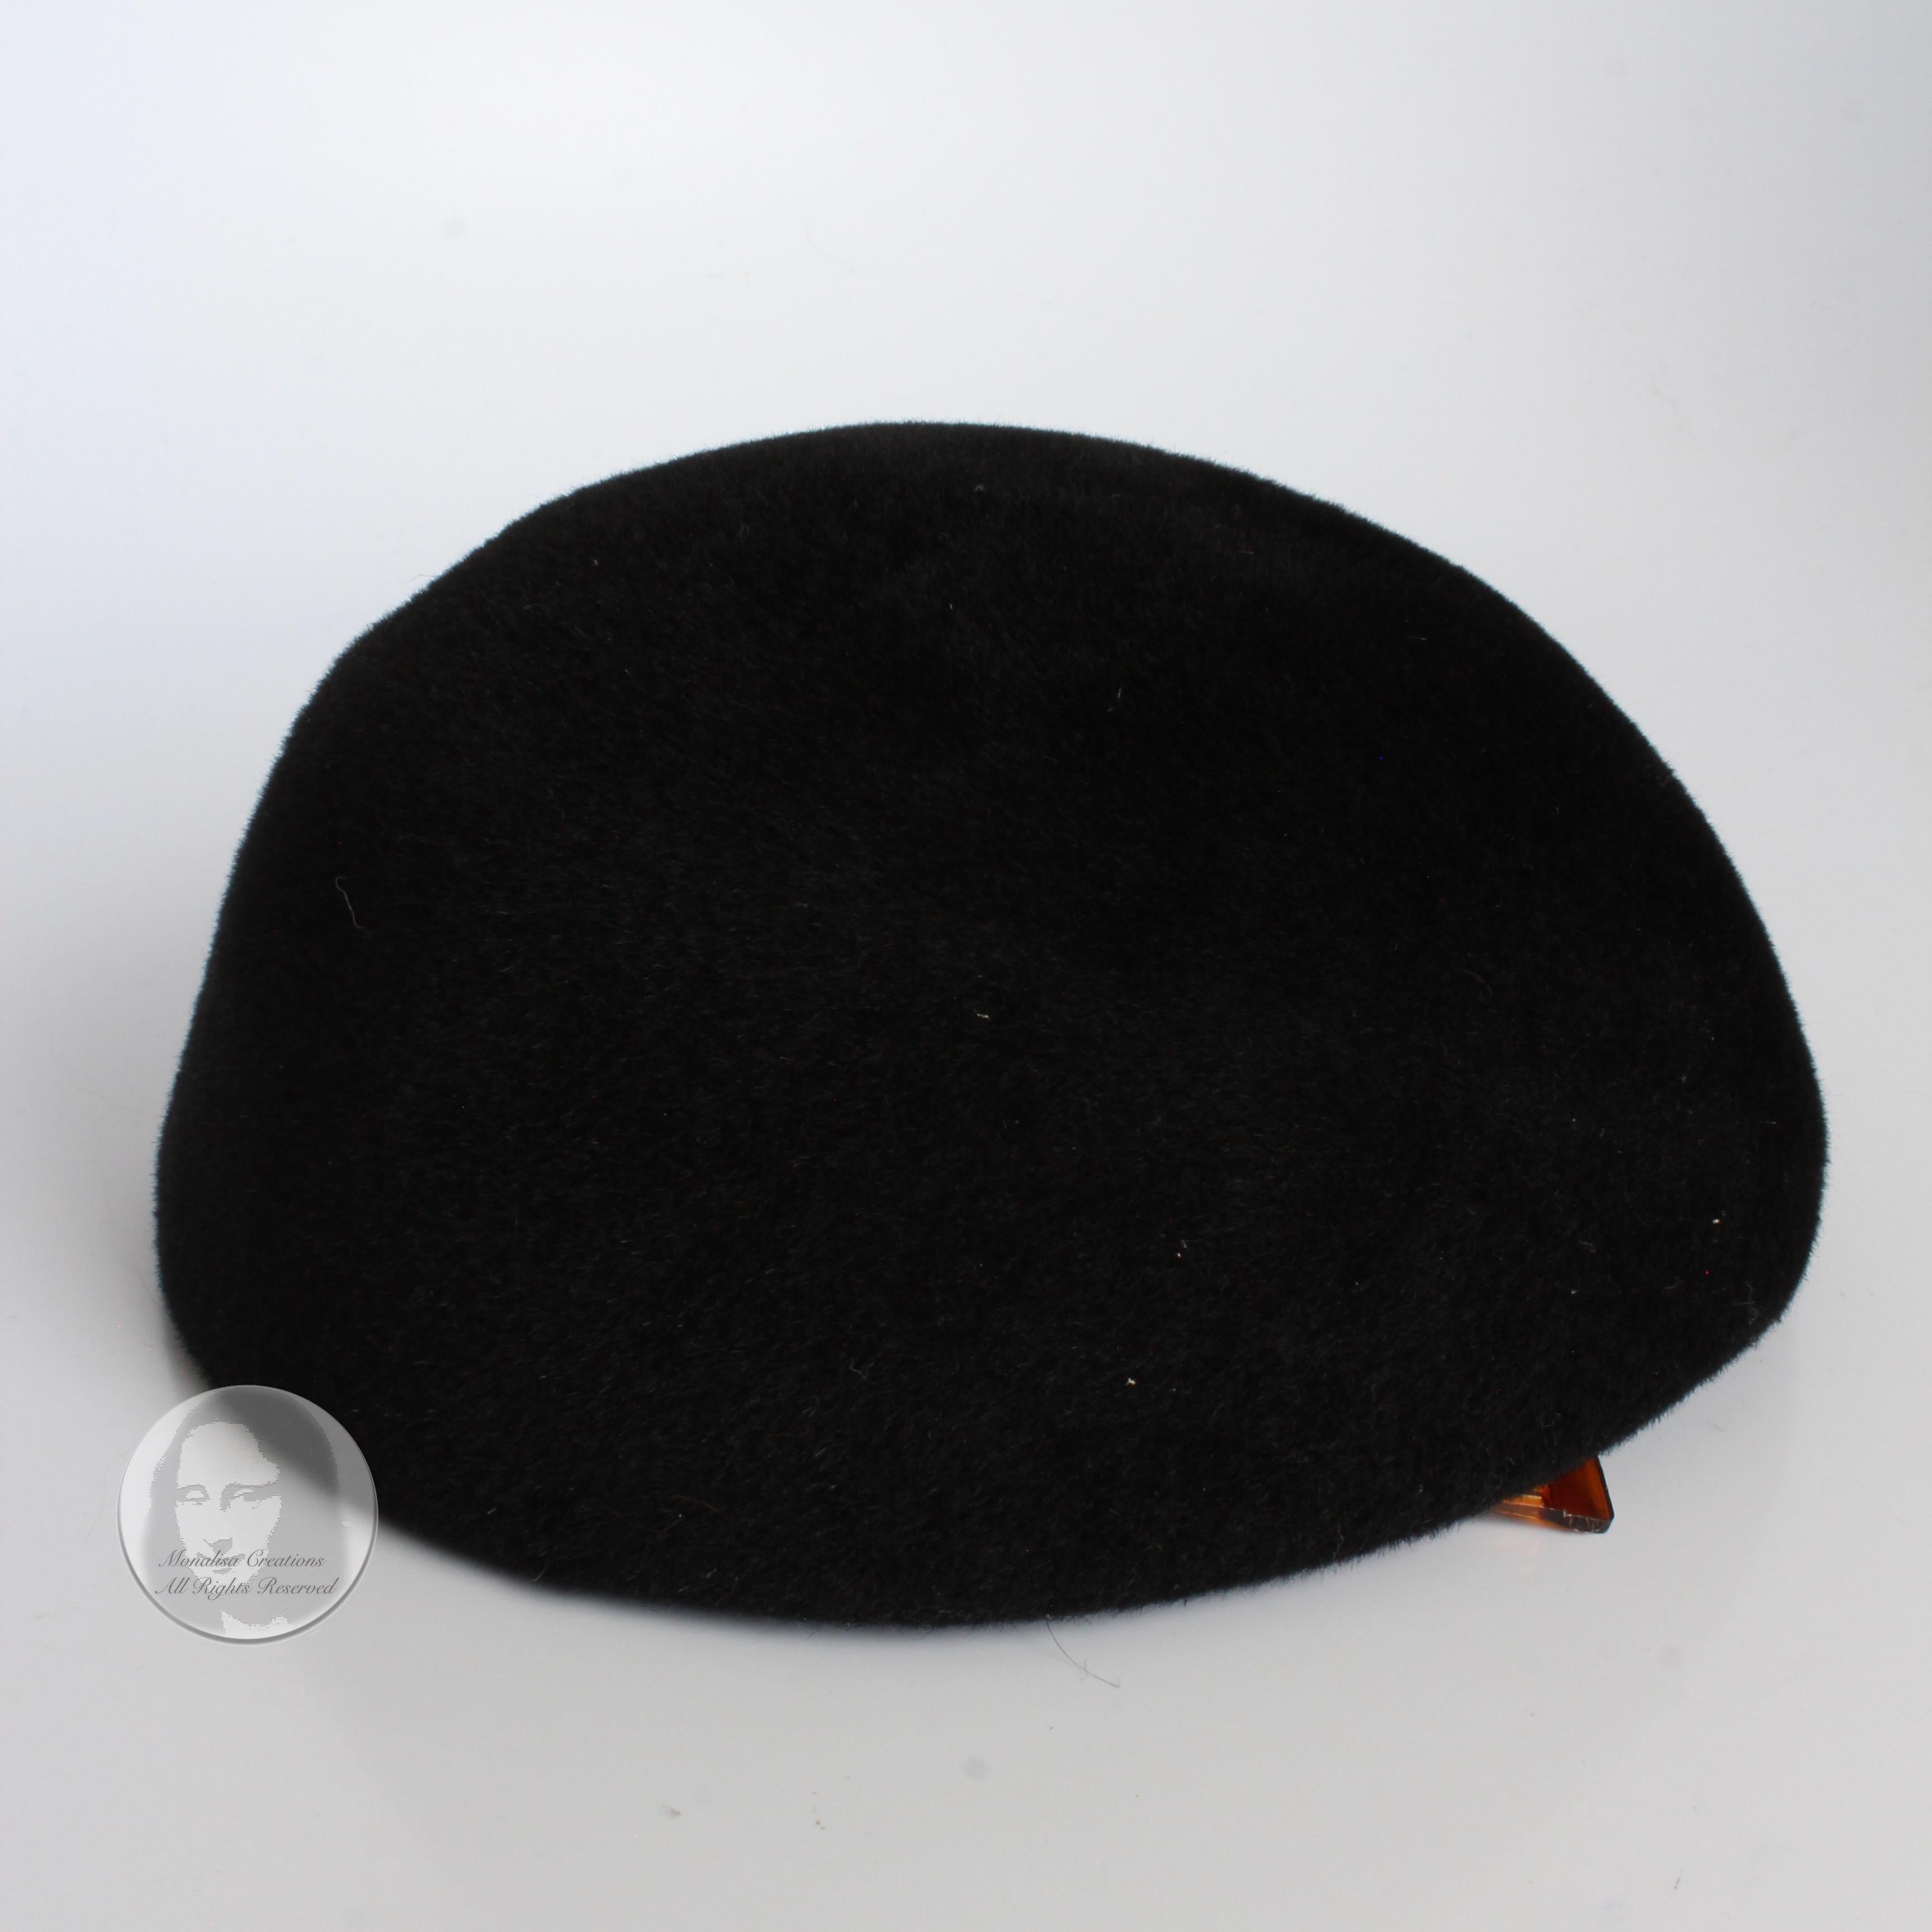 Frank Olive for I. Magnin Hat Calot Juliette Black Velour Vintage Cocktail Hat For Sale 3